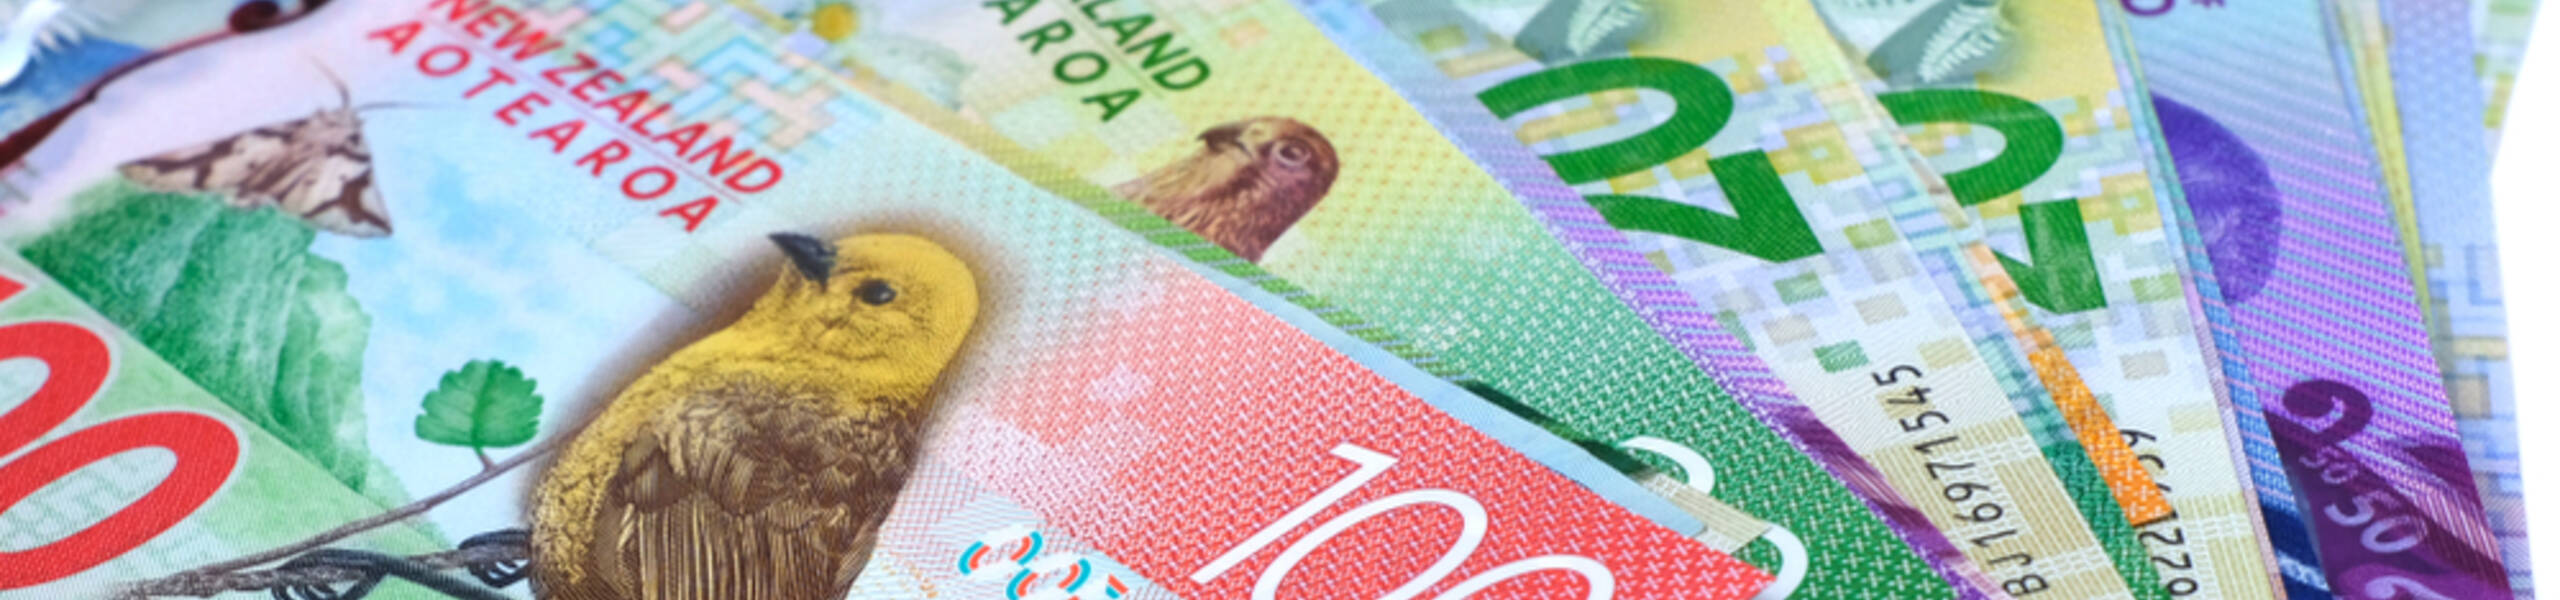 NZD / USD: par é negociado próximo a nível importantíssimo em 0,6600